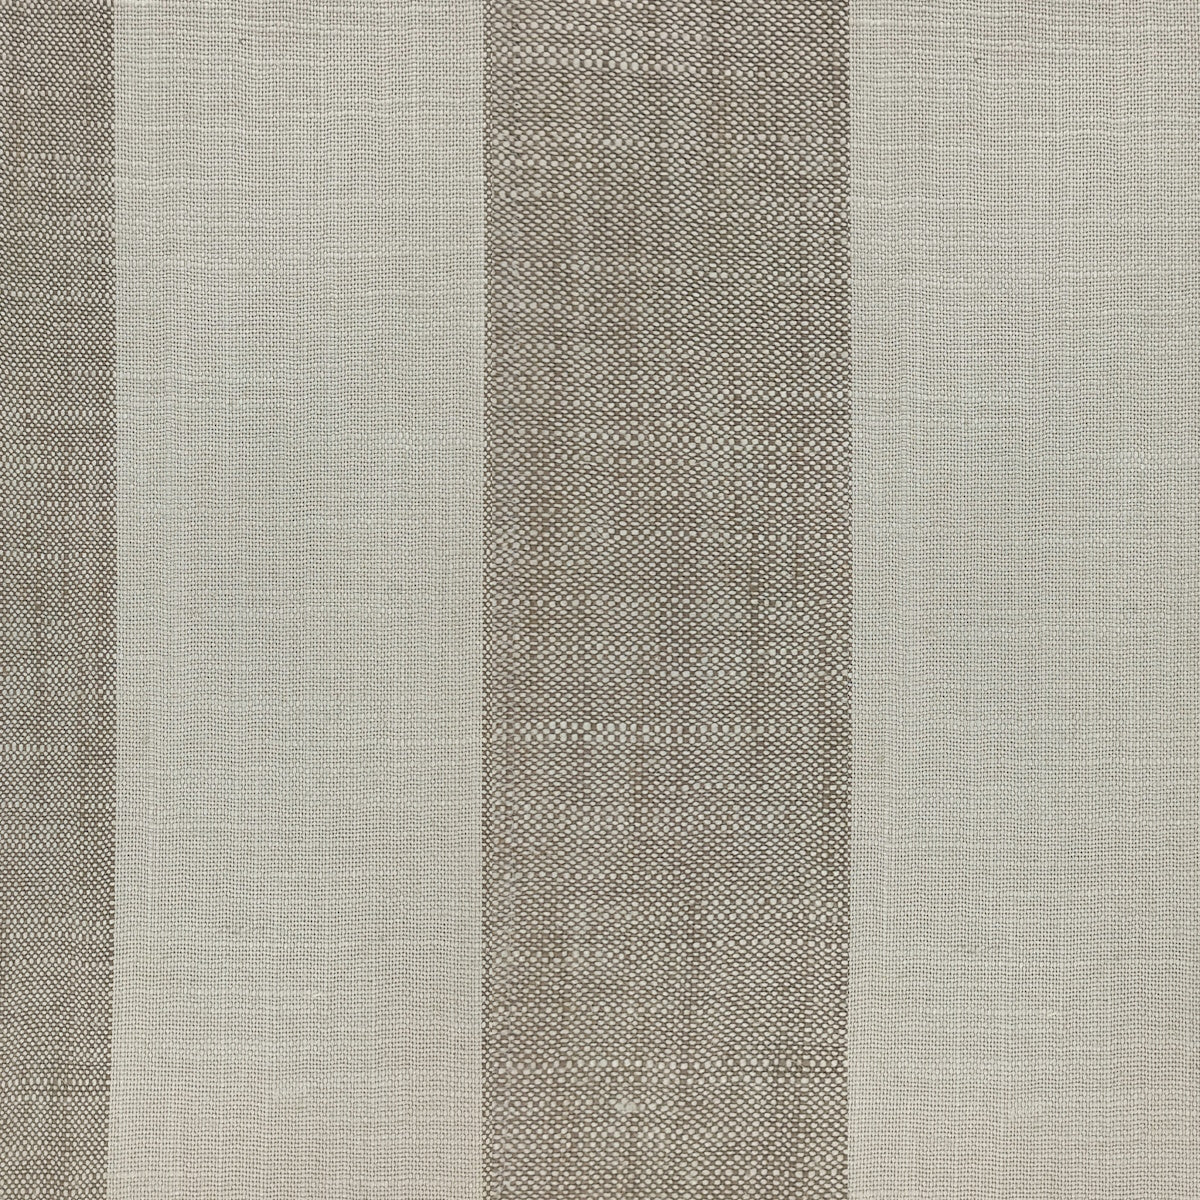 Linen Blend Wide Stripe Curtain Fabric Pleasantdale Cafe Au Lait